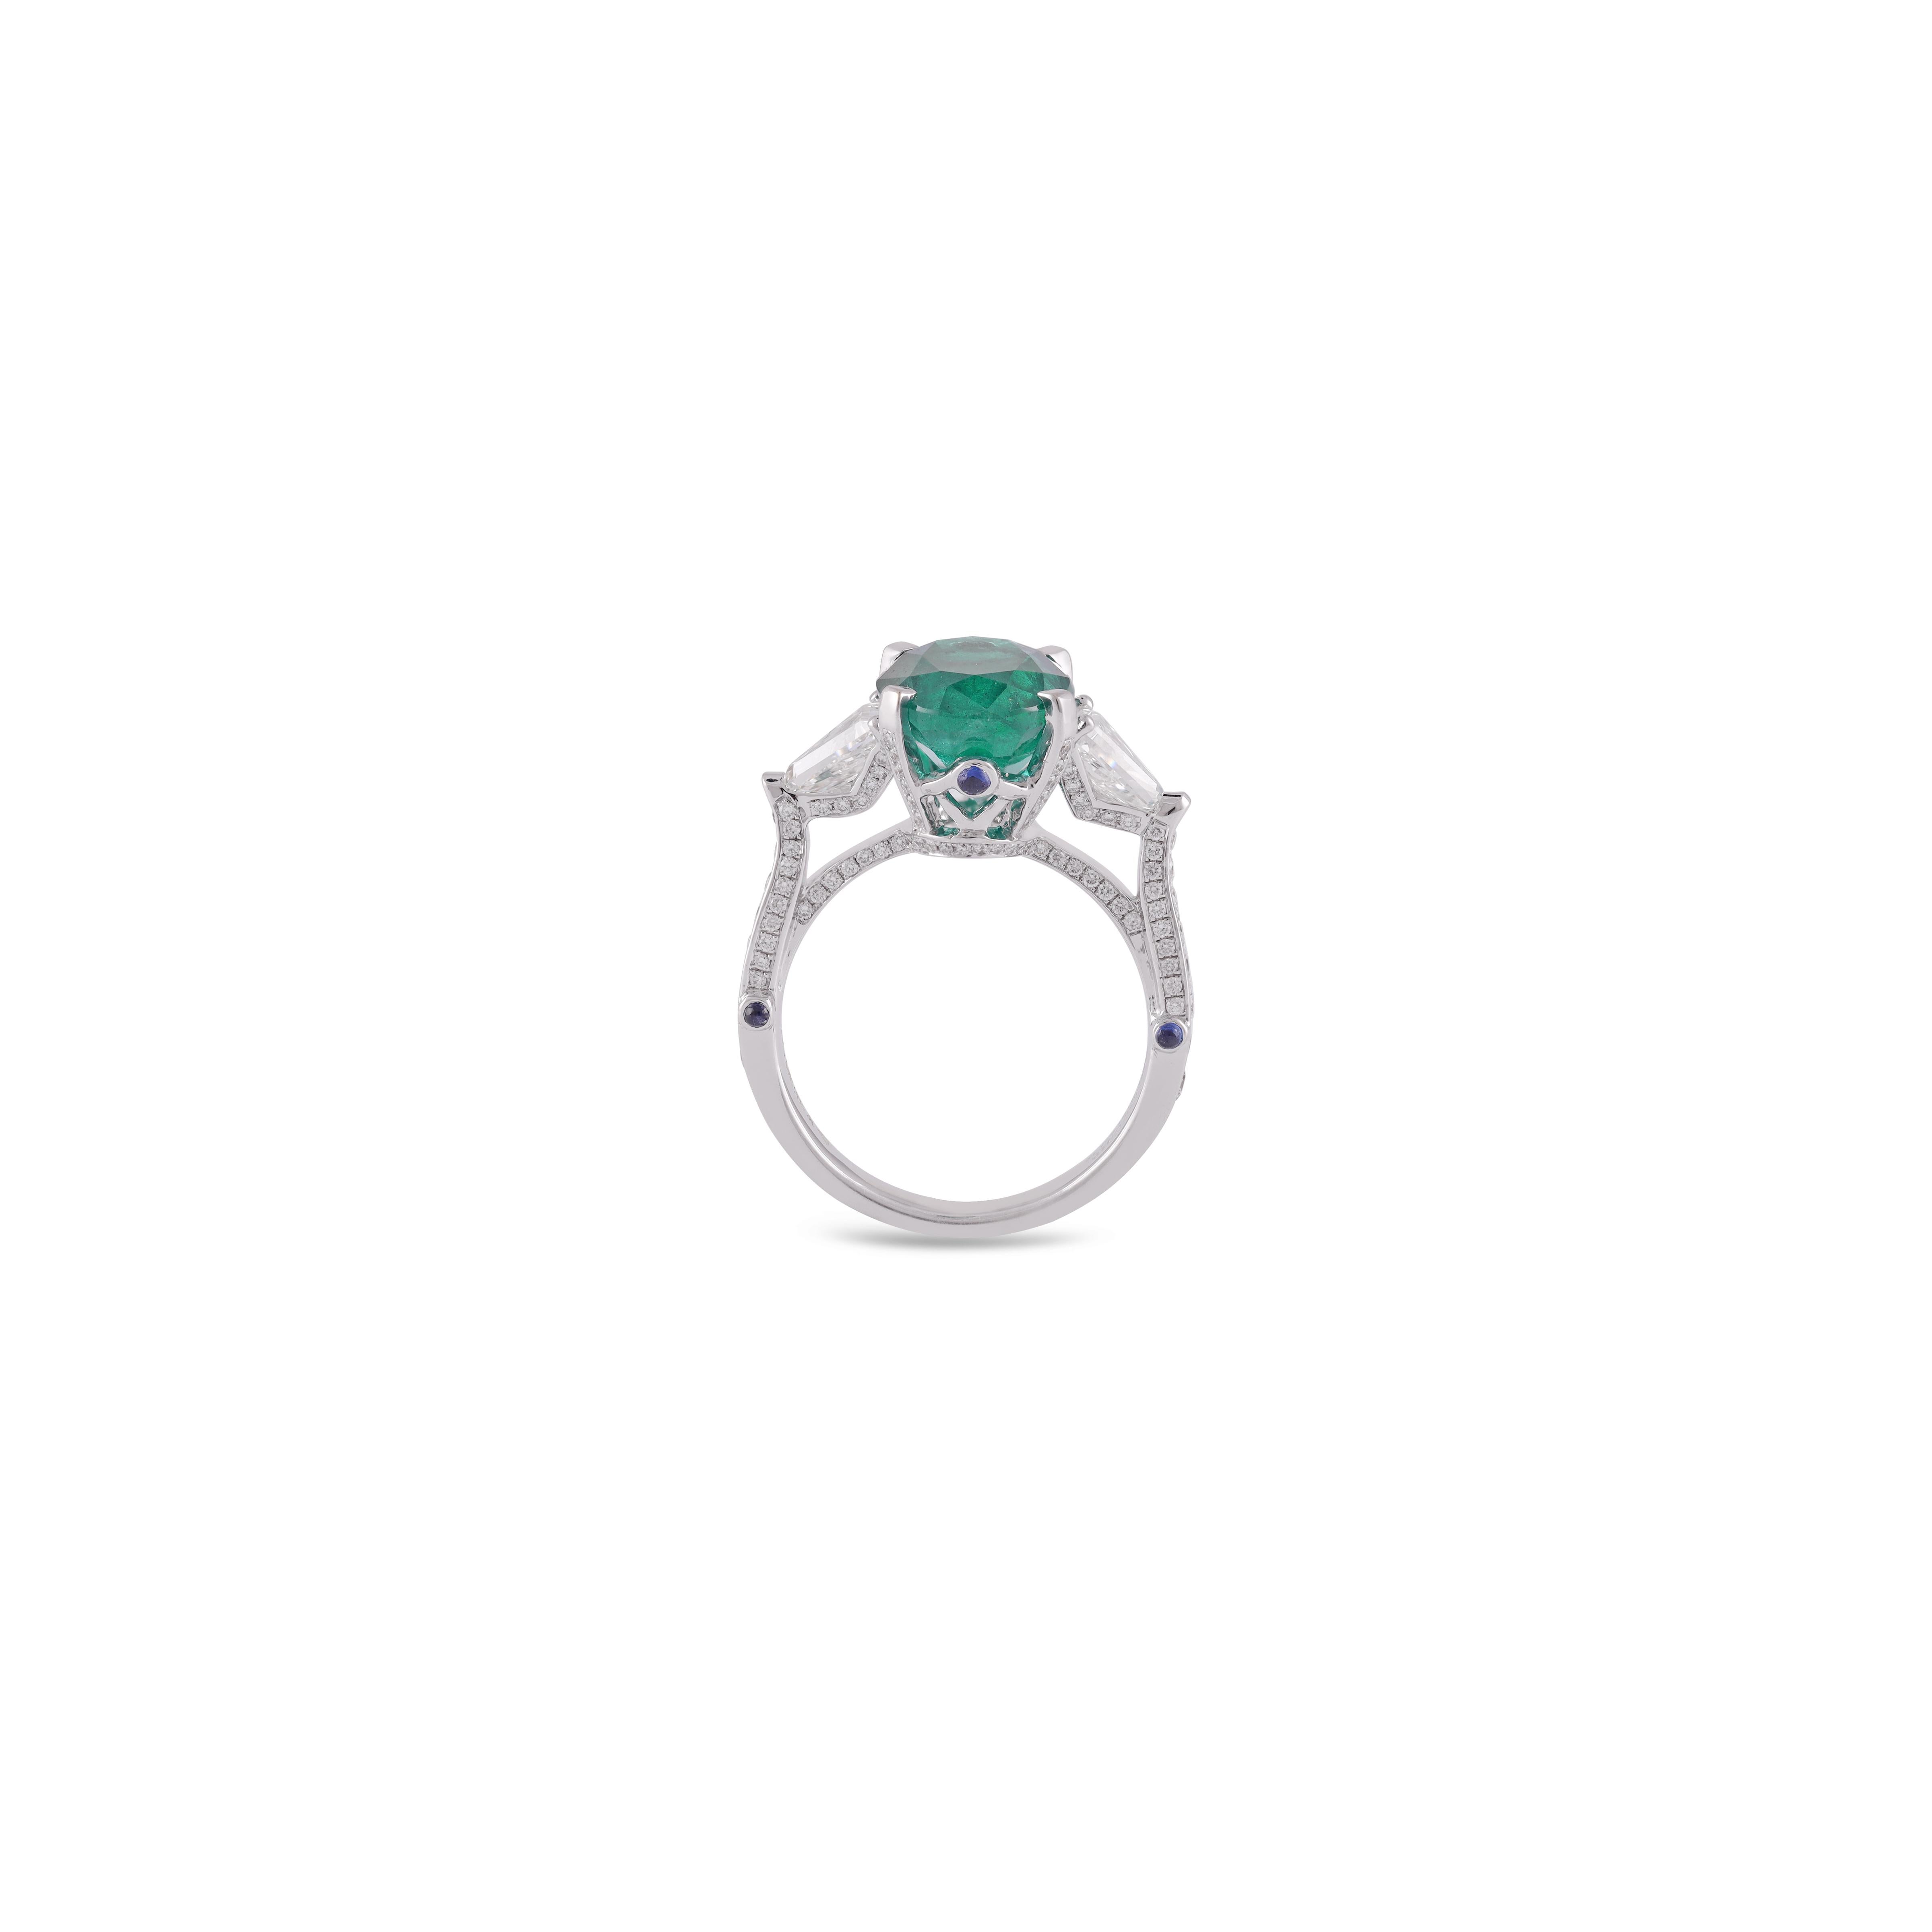 Dies ist eine elegante Smaragd & Diamant Crown Ring in 18k Weißgold mit 1 Stück von Oval Cut besetzt  förmigen sambischen Smaragd Gewicht 4,70 Karat, die von 20 Stück rund geformten Diamanten Gewicht 1,49 Karat & 6 Stück Saphir 0,14 Karat diese